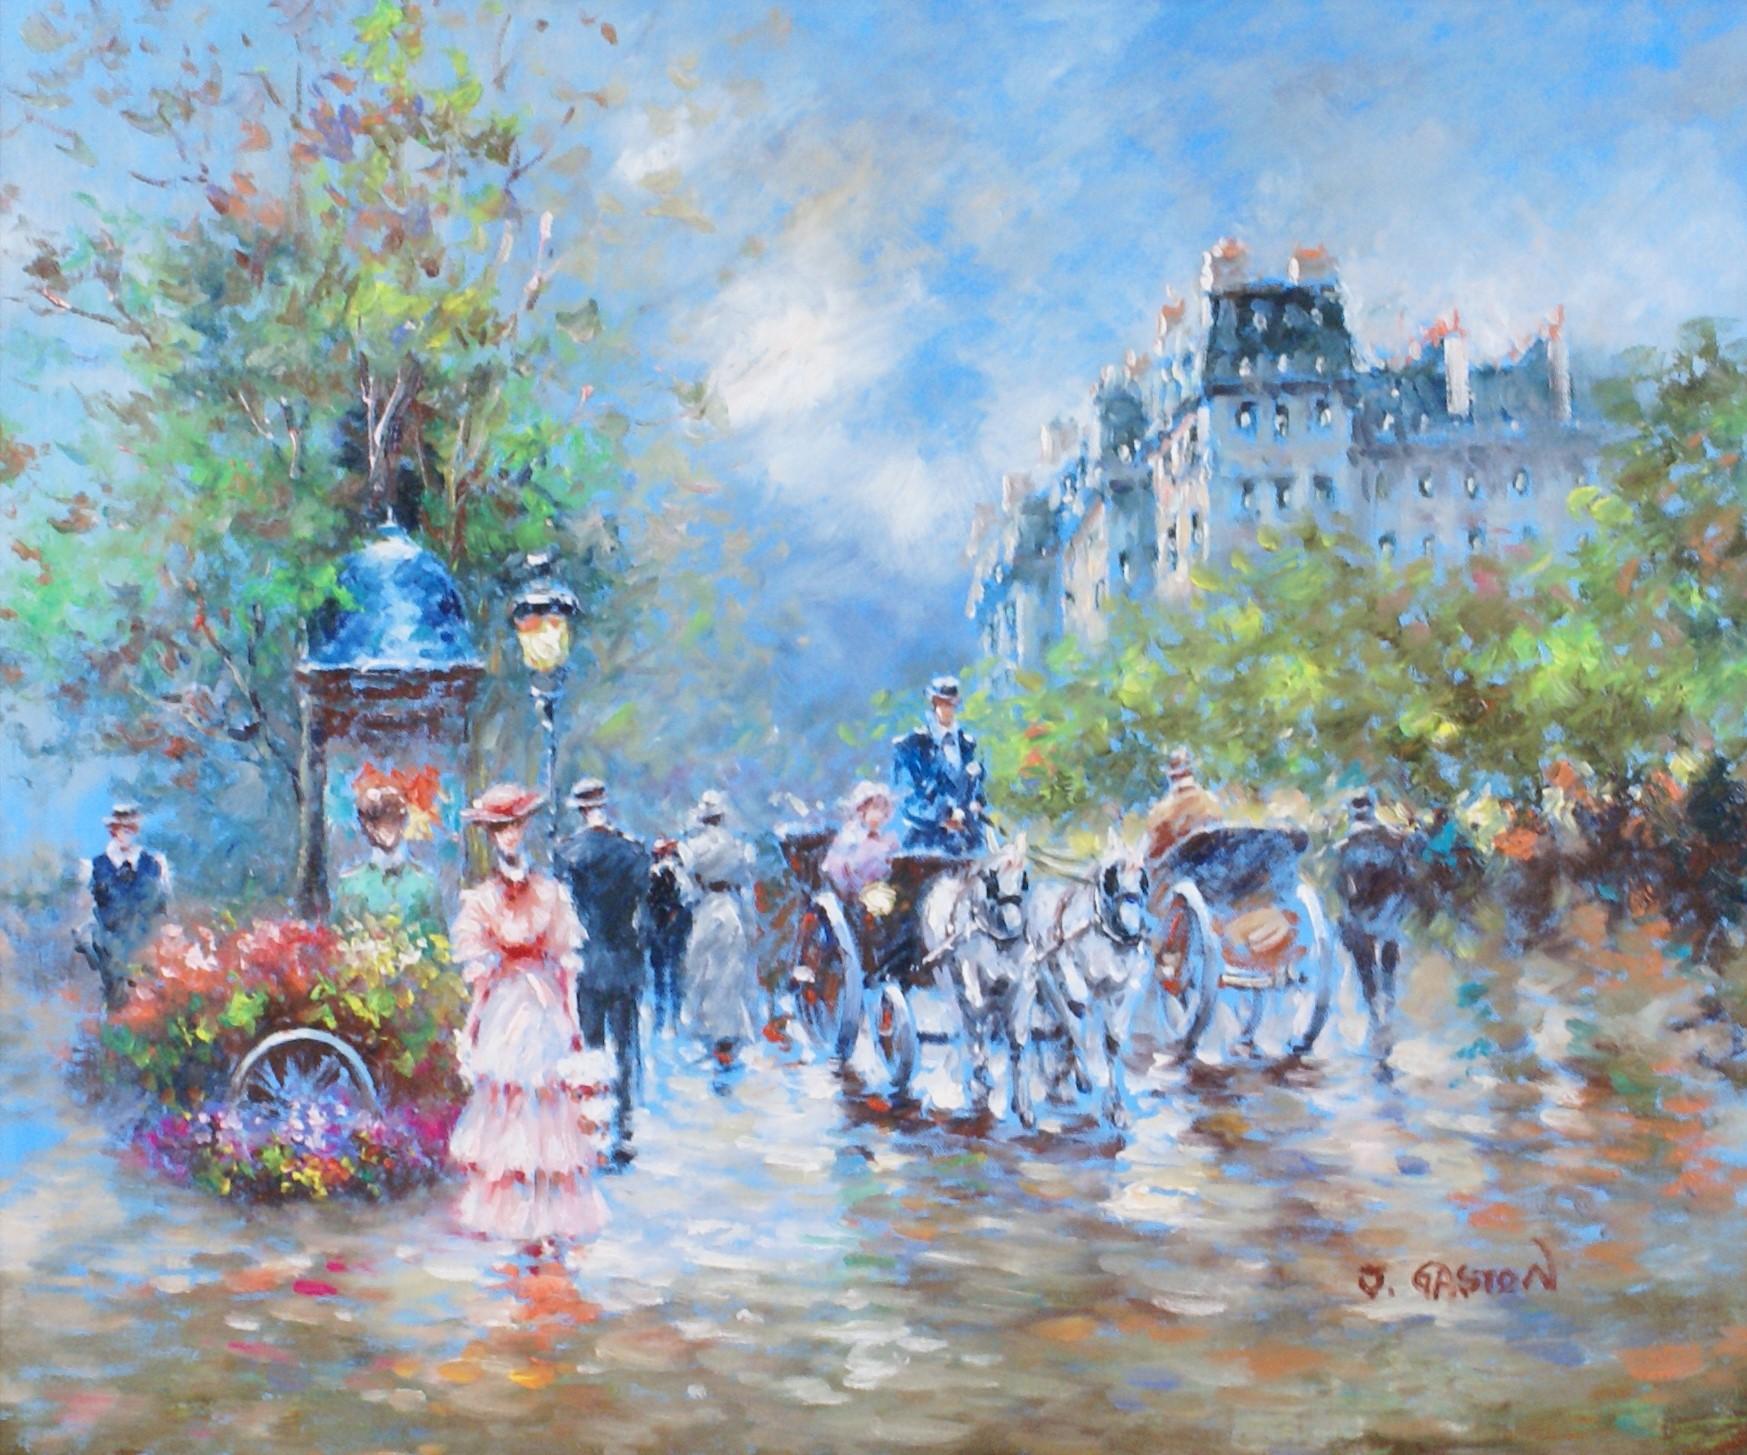 {Parisian Boulevard} - Painting by Johny Gaston